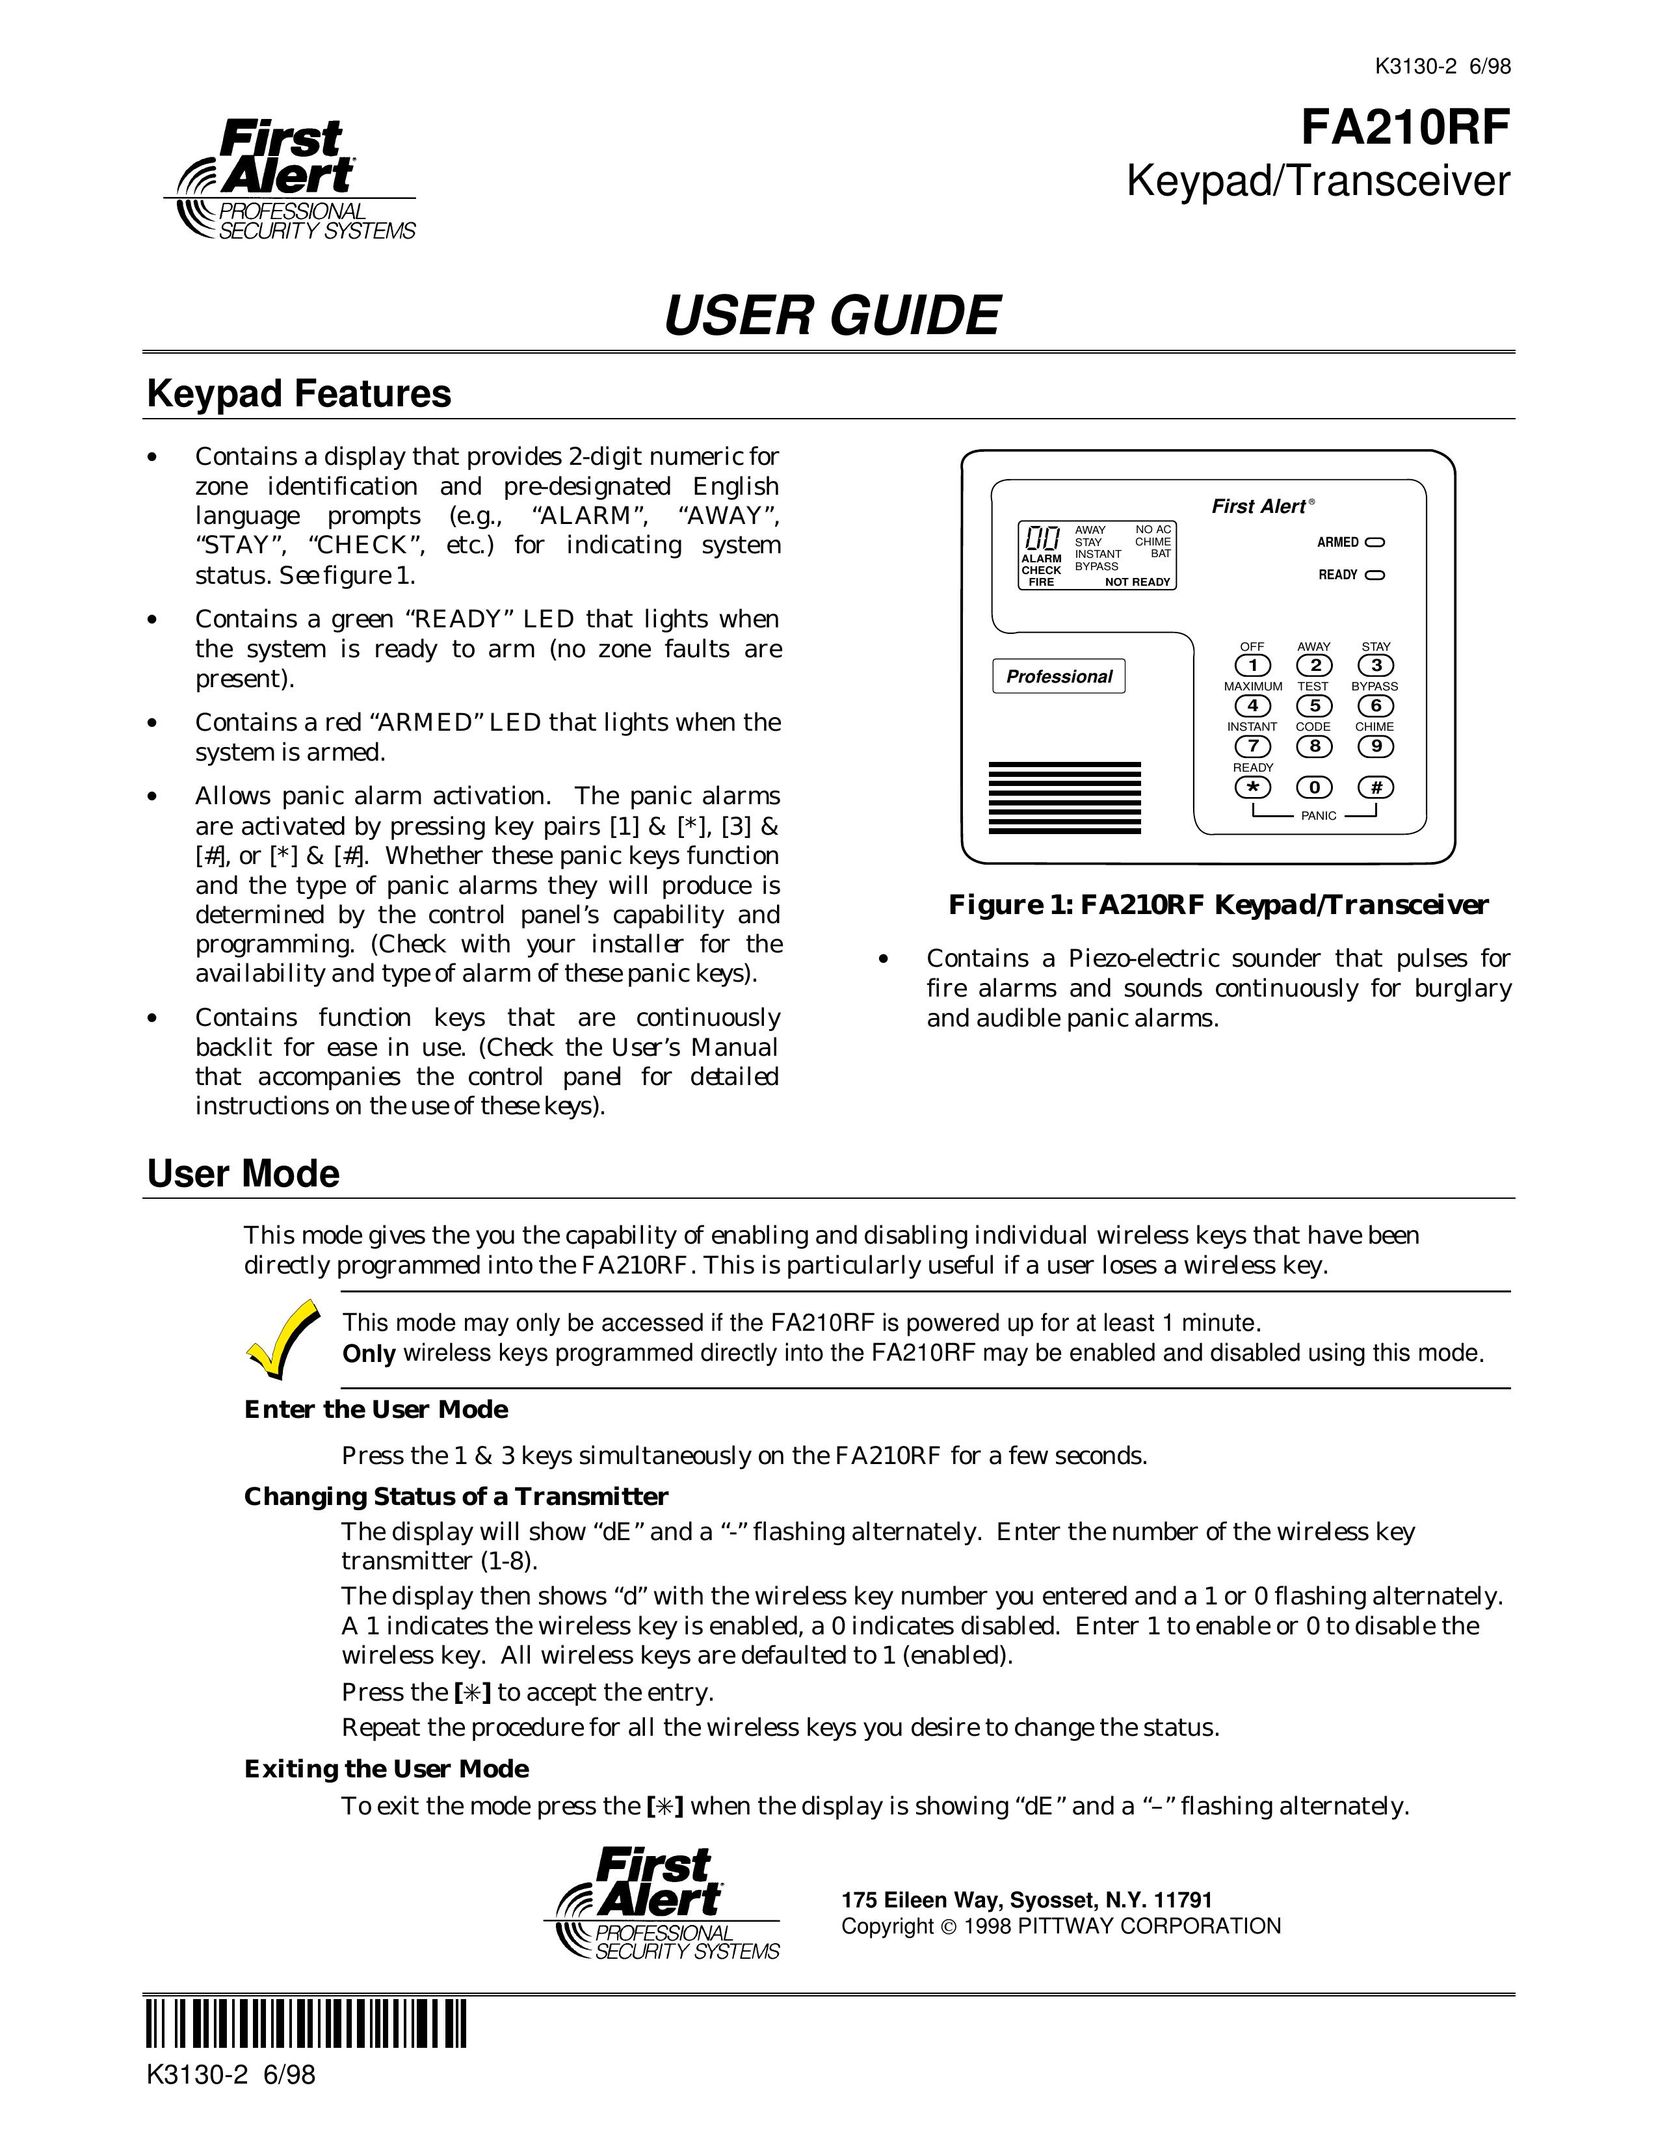 First Alert FA210RF Garage Door Opener User Manual